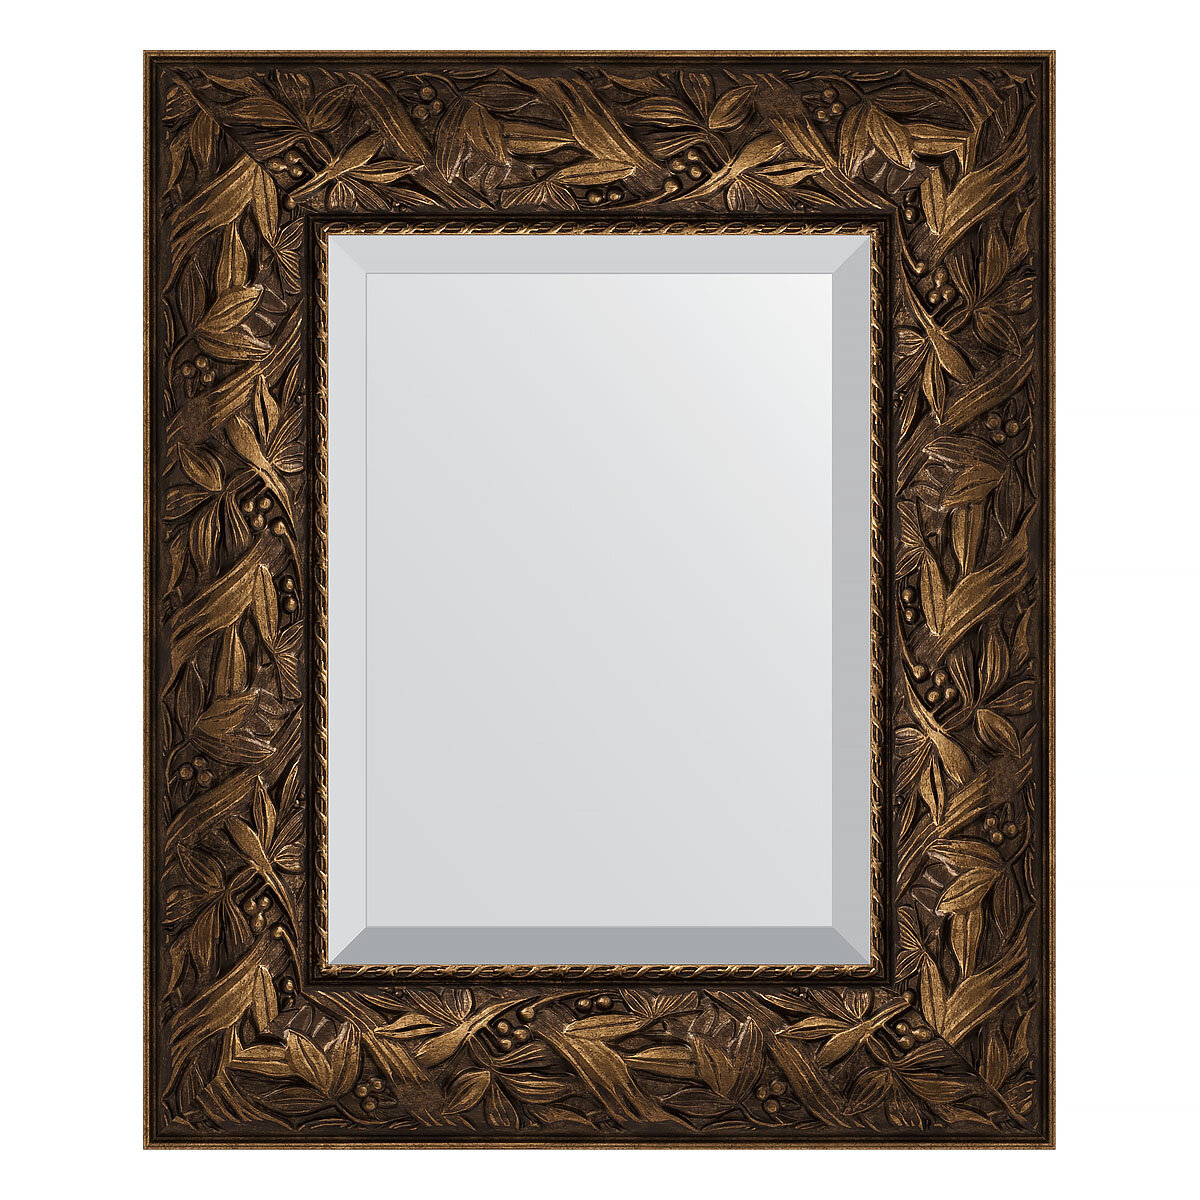 Evoform Зеркало настенное с фацетом EVOFORM в багетной раме Византия бронза, 49х59 см, BY 3365